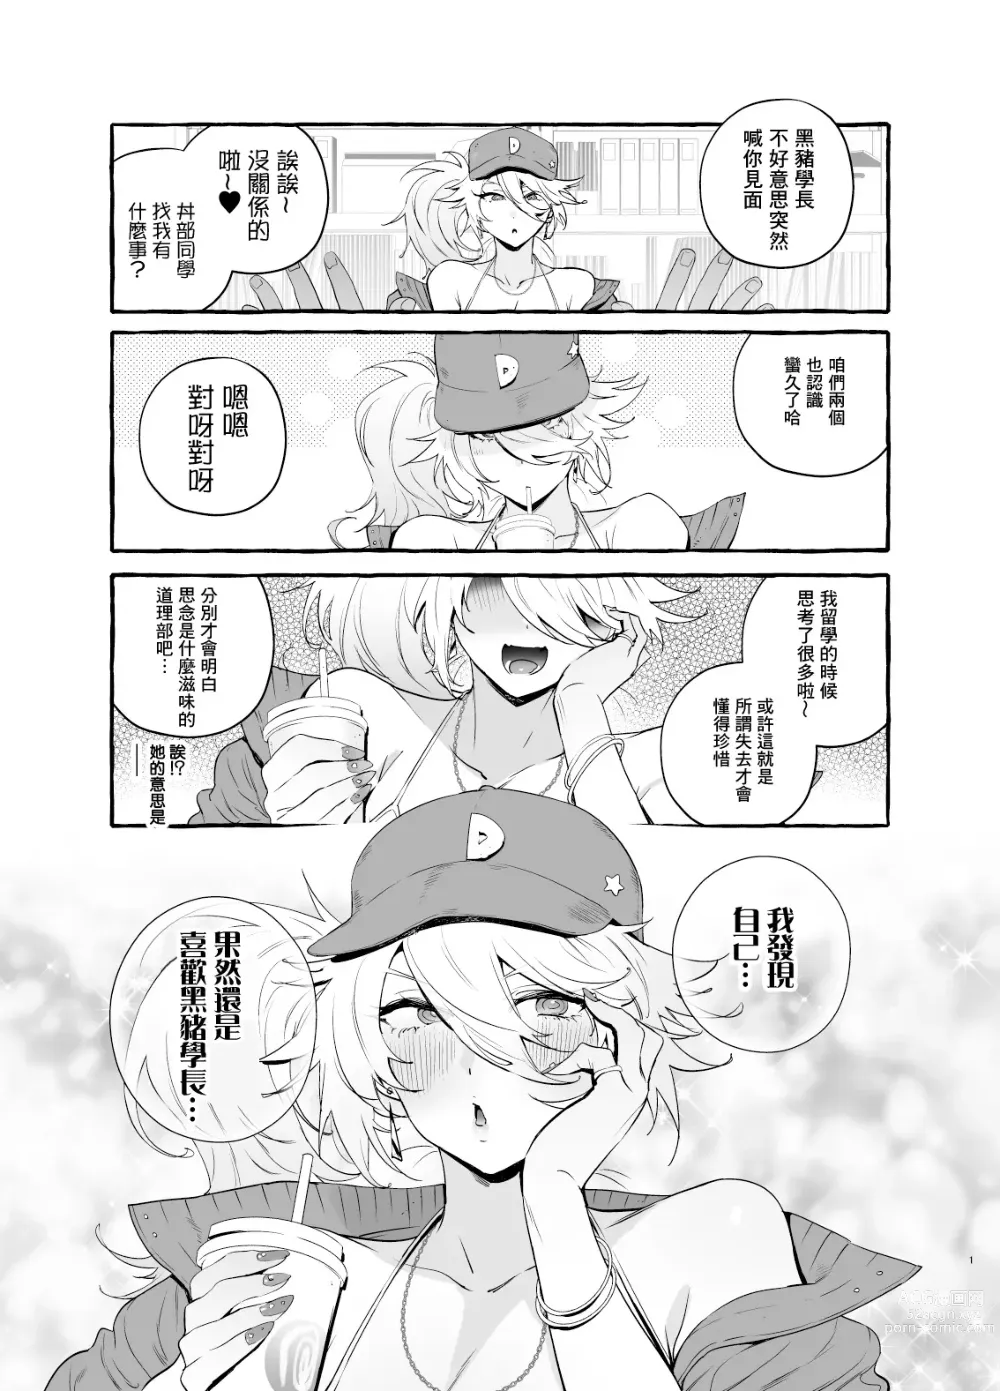 Page 4 of doujinshi 宅男社团的辣妹VS地雷男